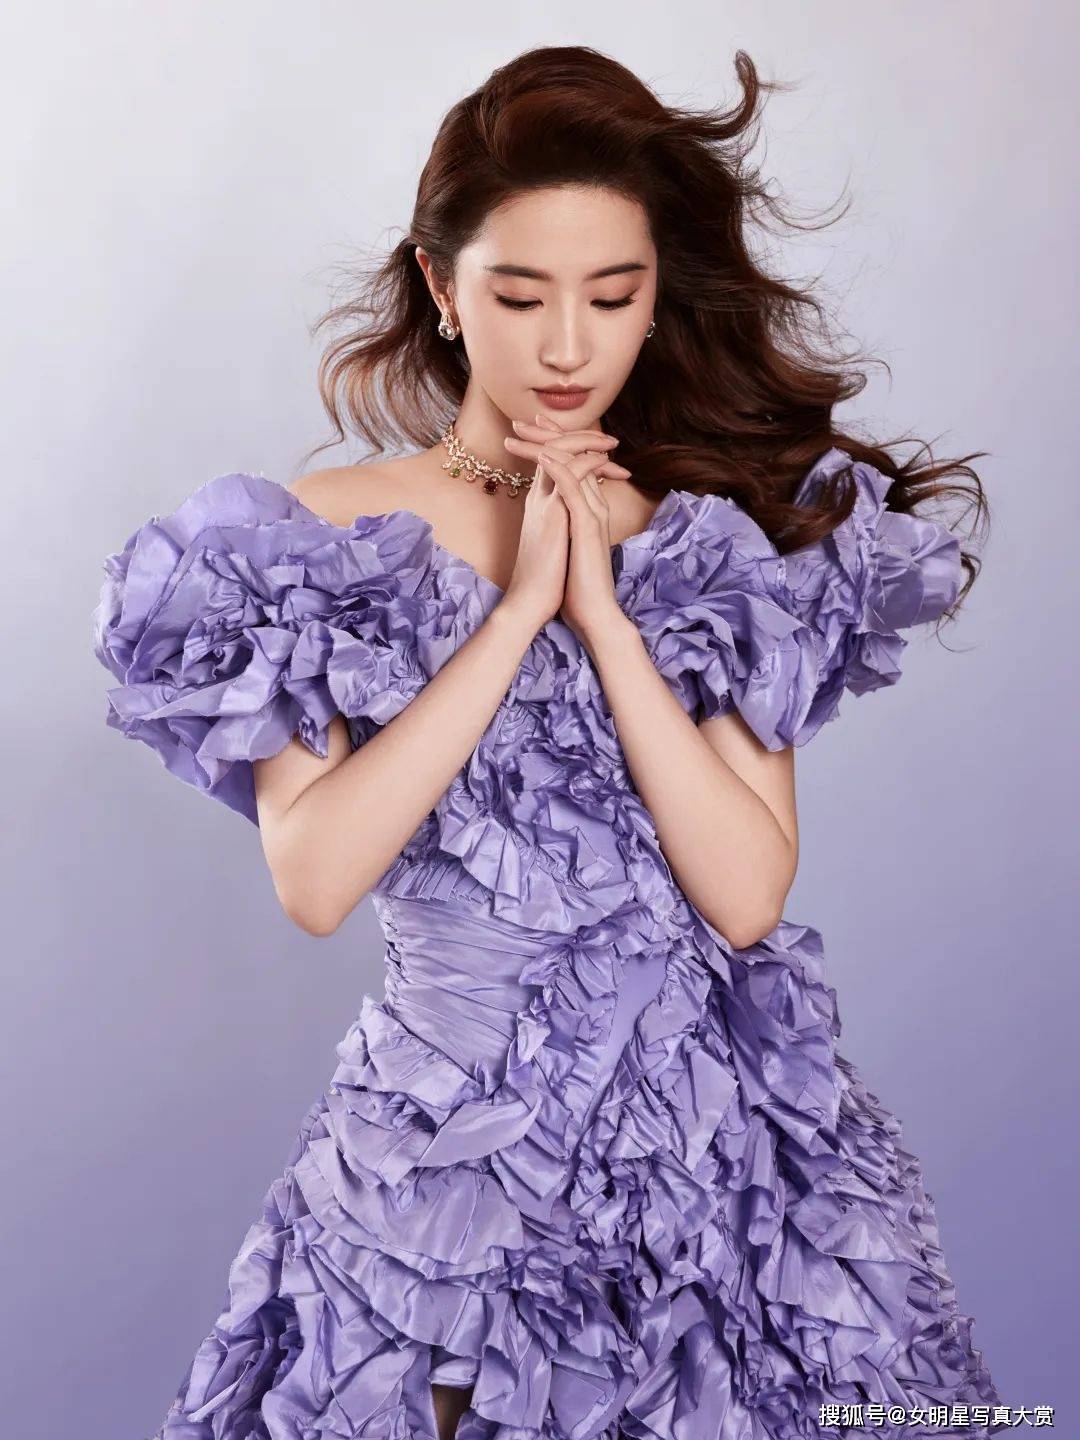 【刘亦菲性感写真美图】紫罗兰色礼裙,优雅浪漫,《星愿》首映礼